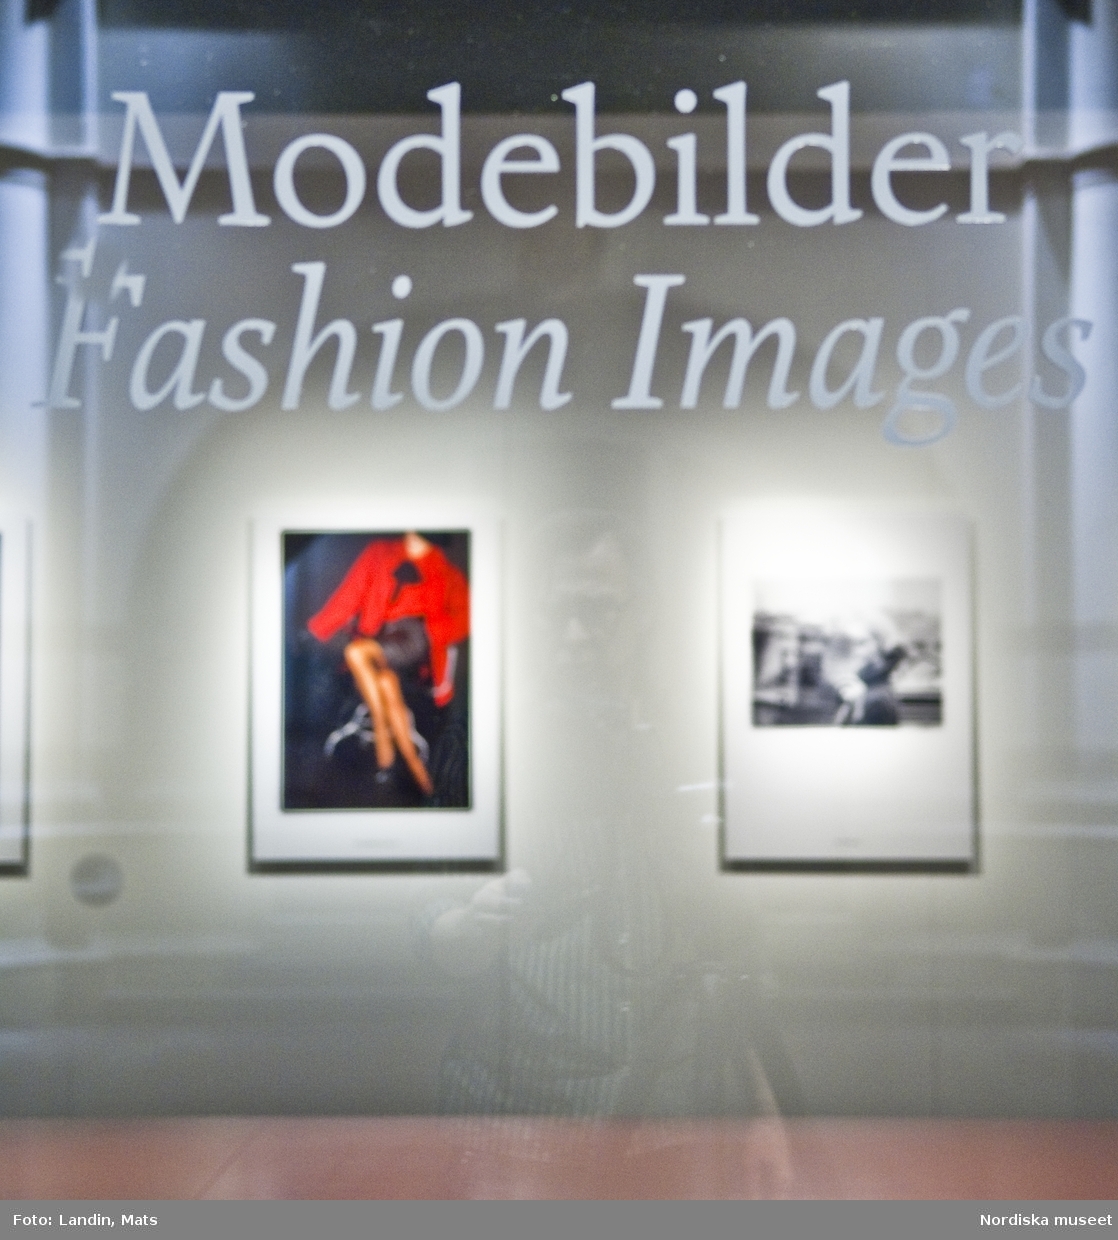 Nordiska museet utställning Modebilder.
2008
Modebilder i nytt ljus på Nordiska museet